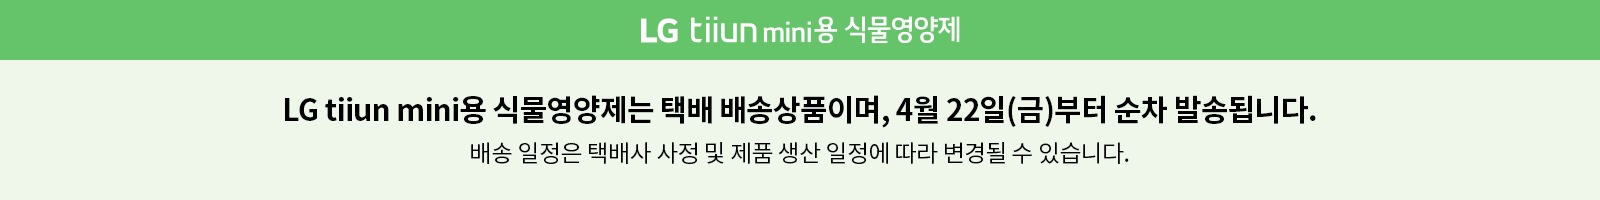 tiiun_mini_banner_pc